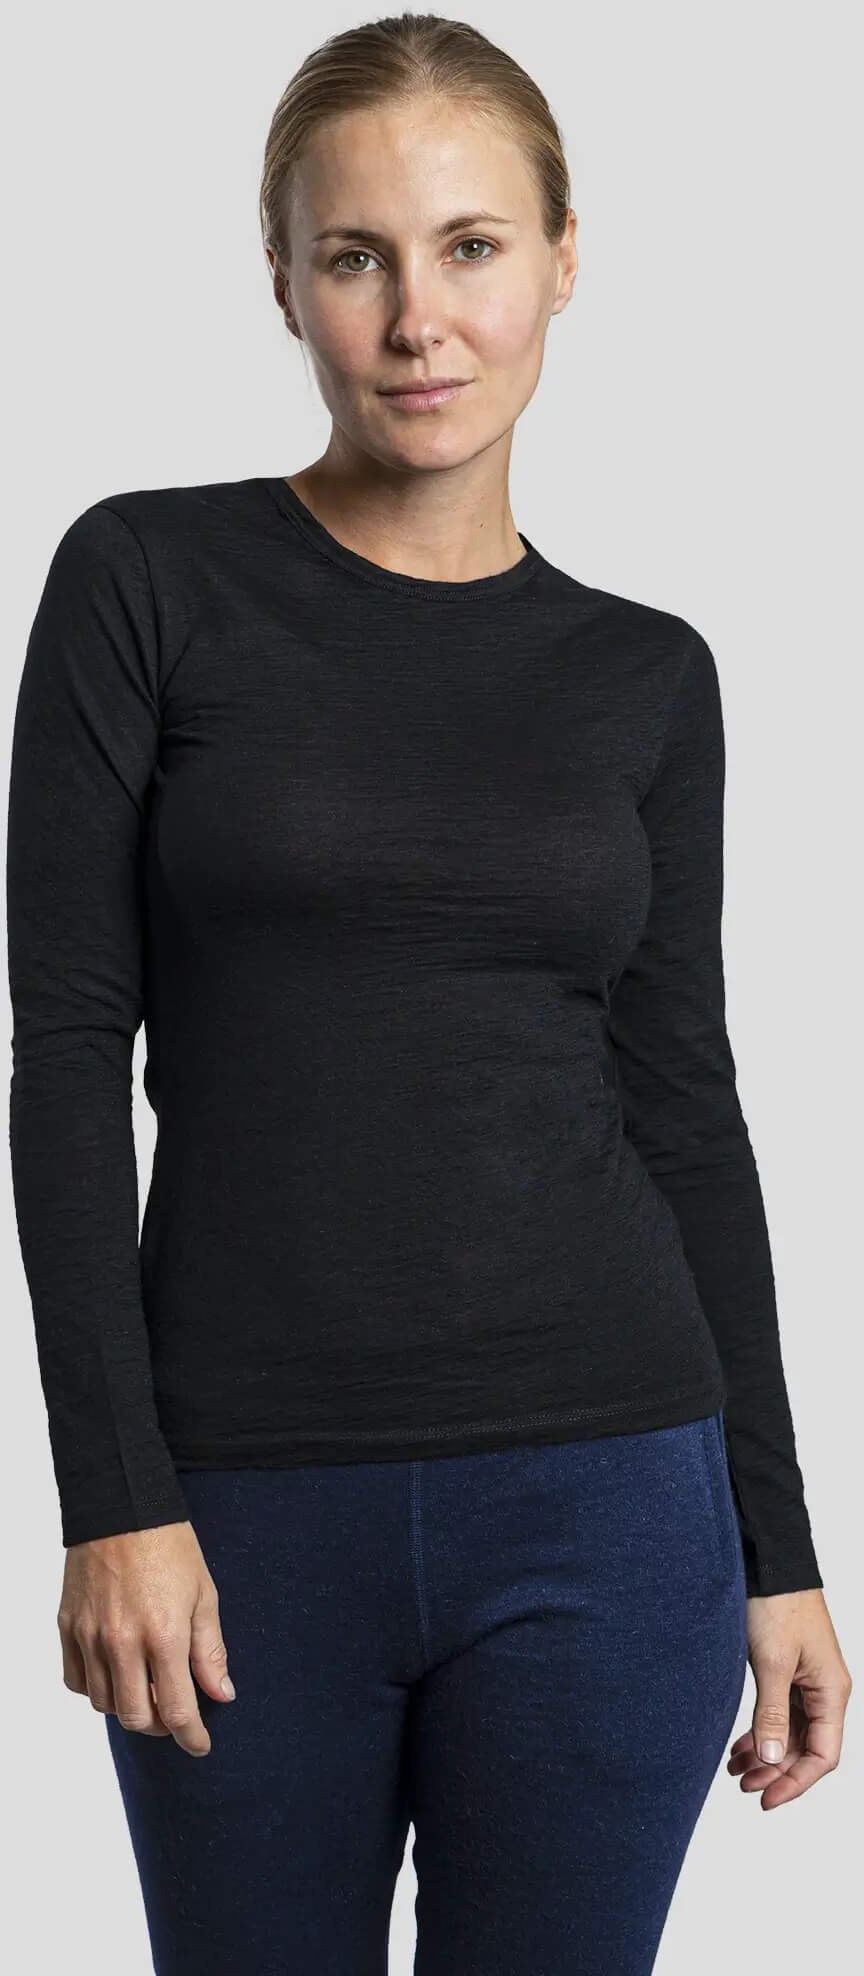 160 Сверхлегкая базовая рубашка с длинными рукавами из шерсти альпаки — женская Arms of Andes, черный